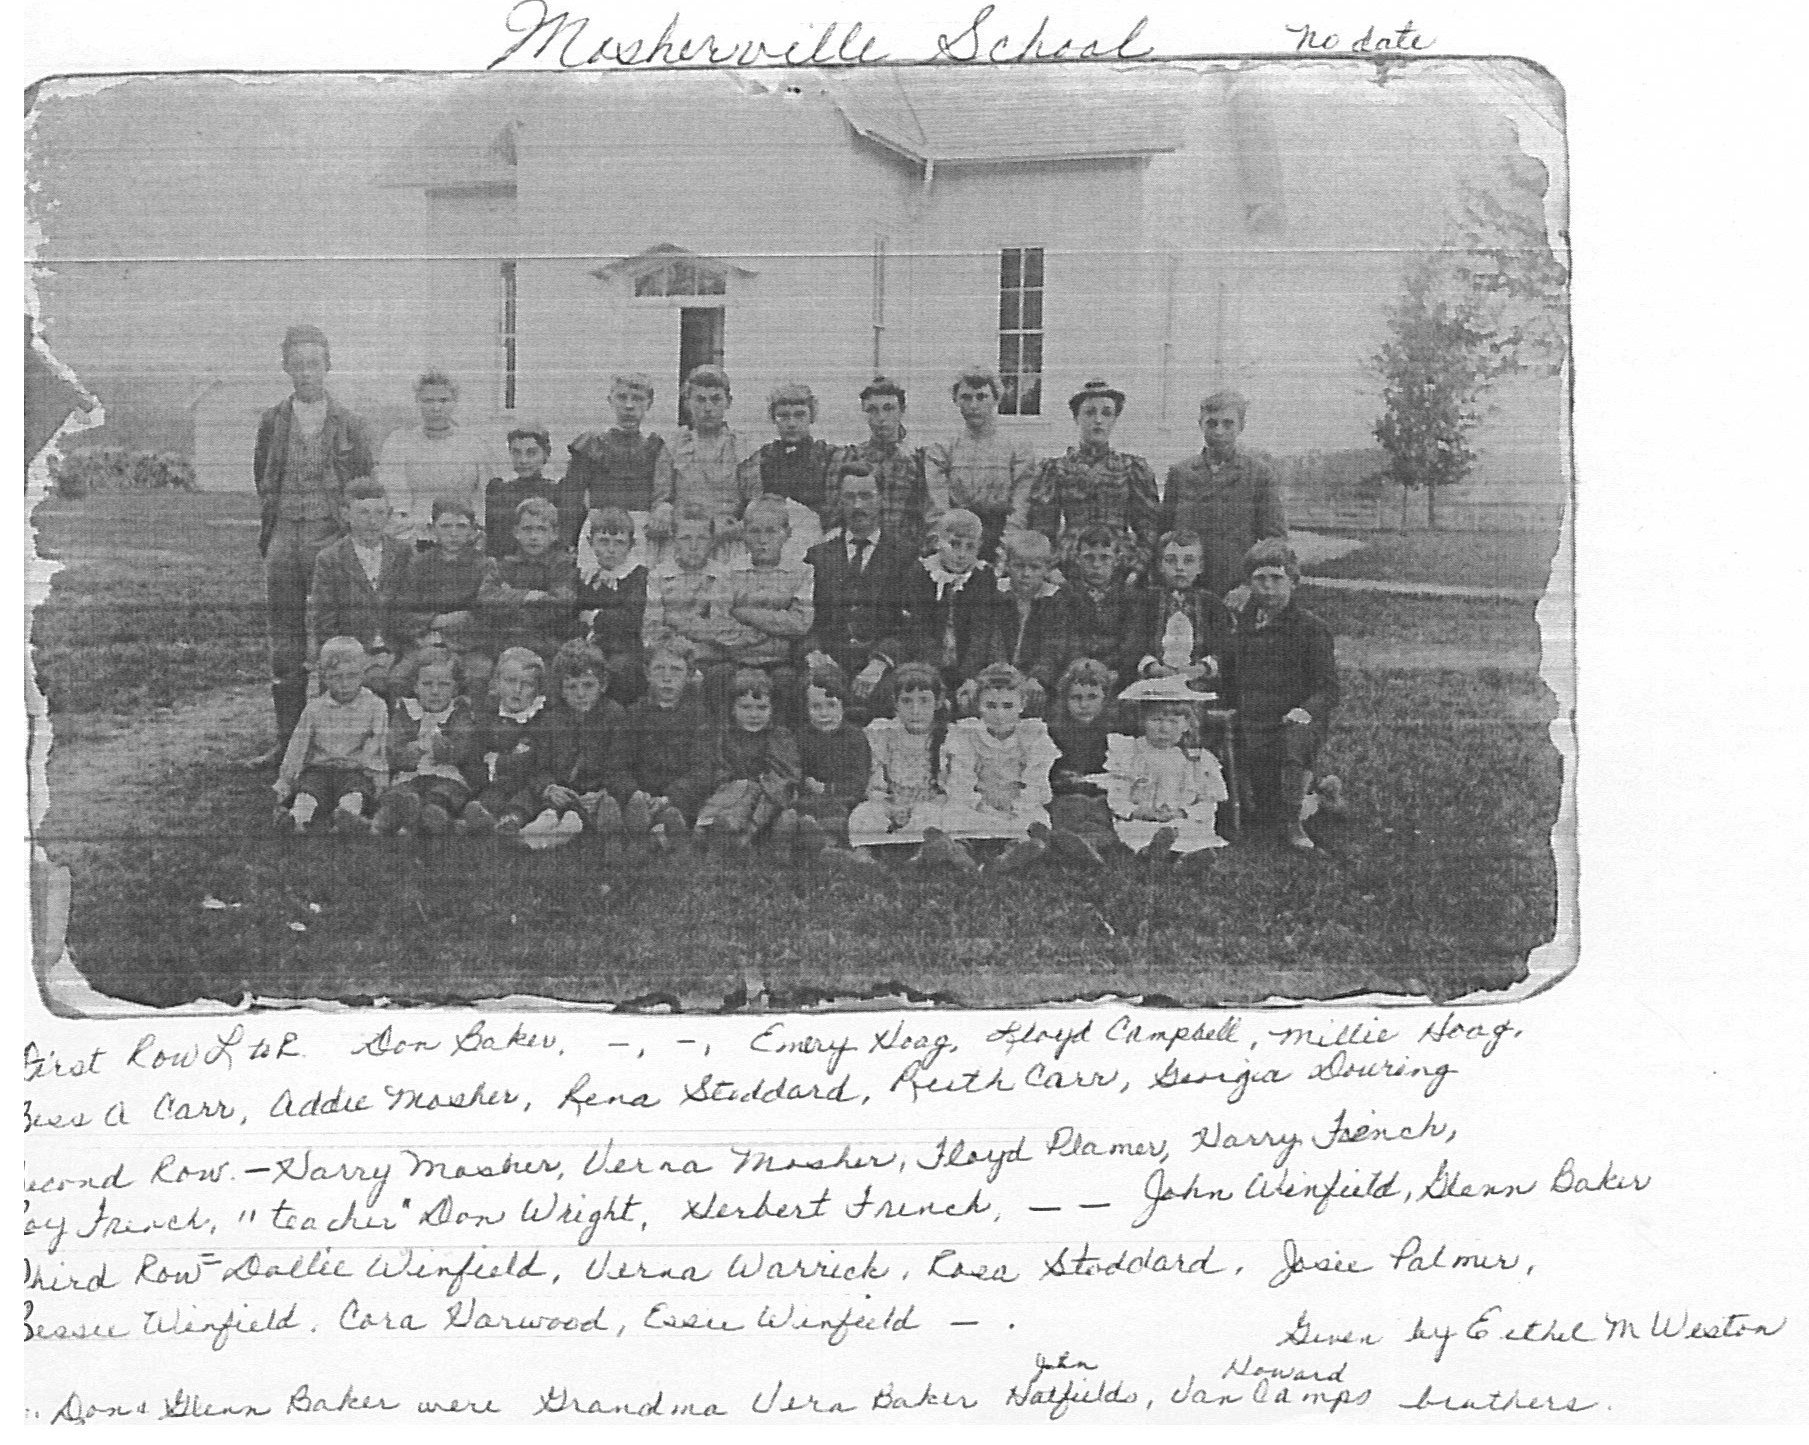 Undated Mosherville School